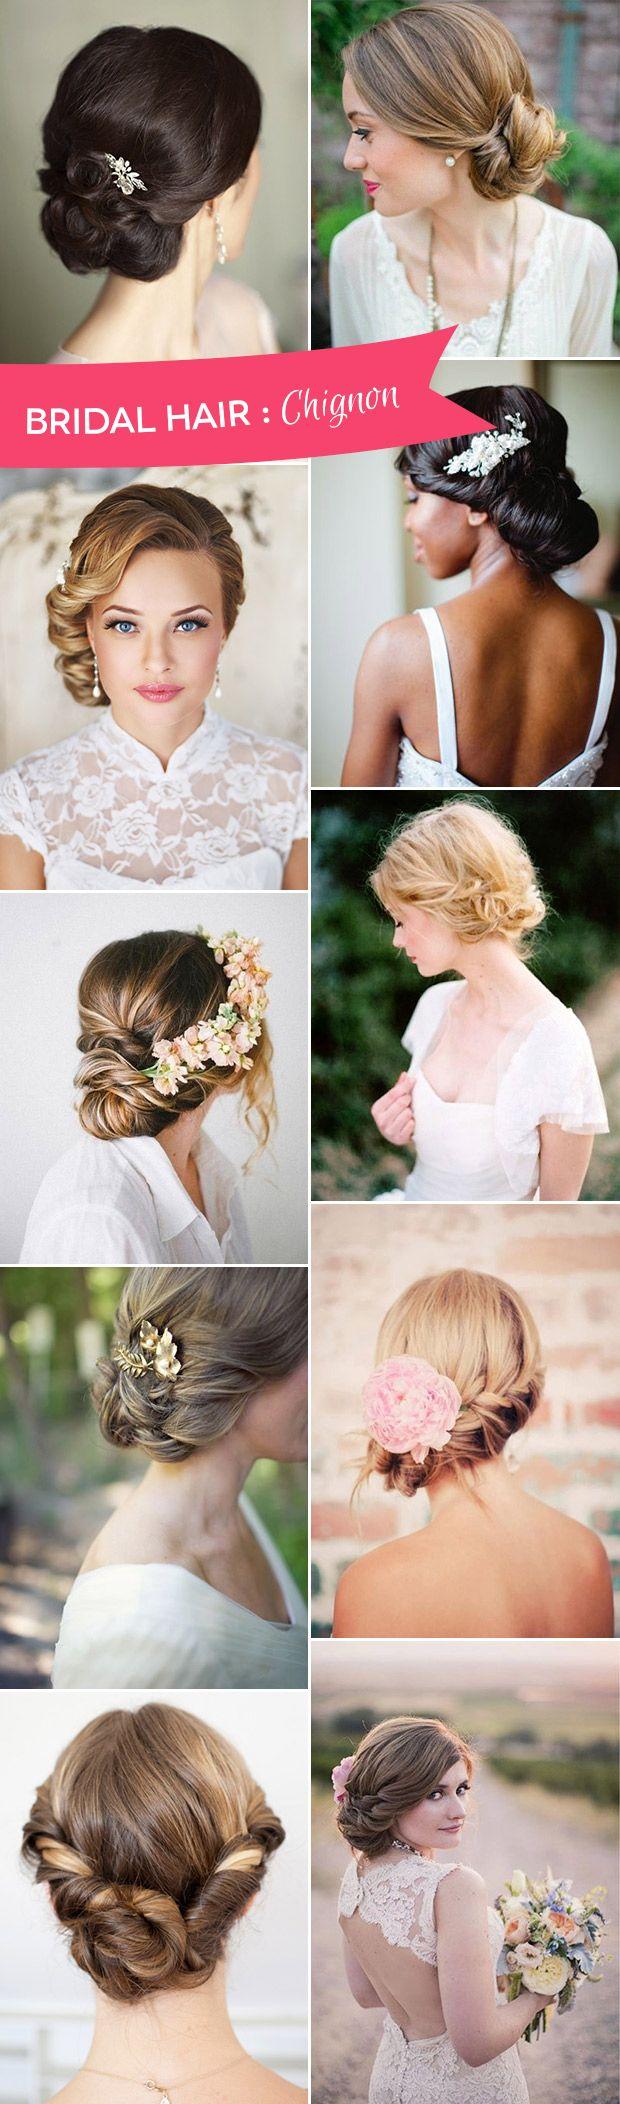 زفاف - The Charm Of Chignons - The Simplest Wedding Hairstyle